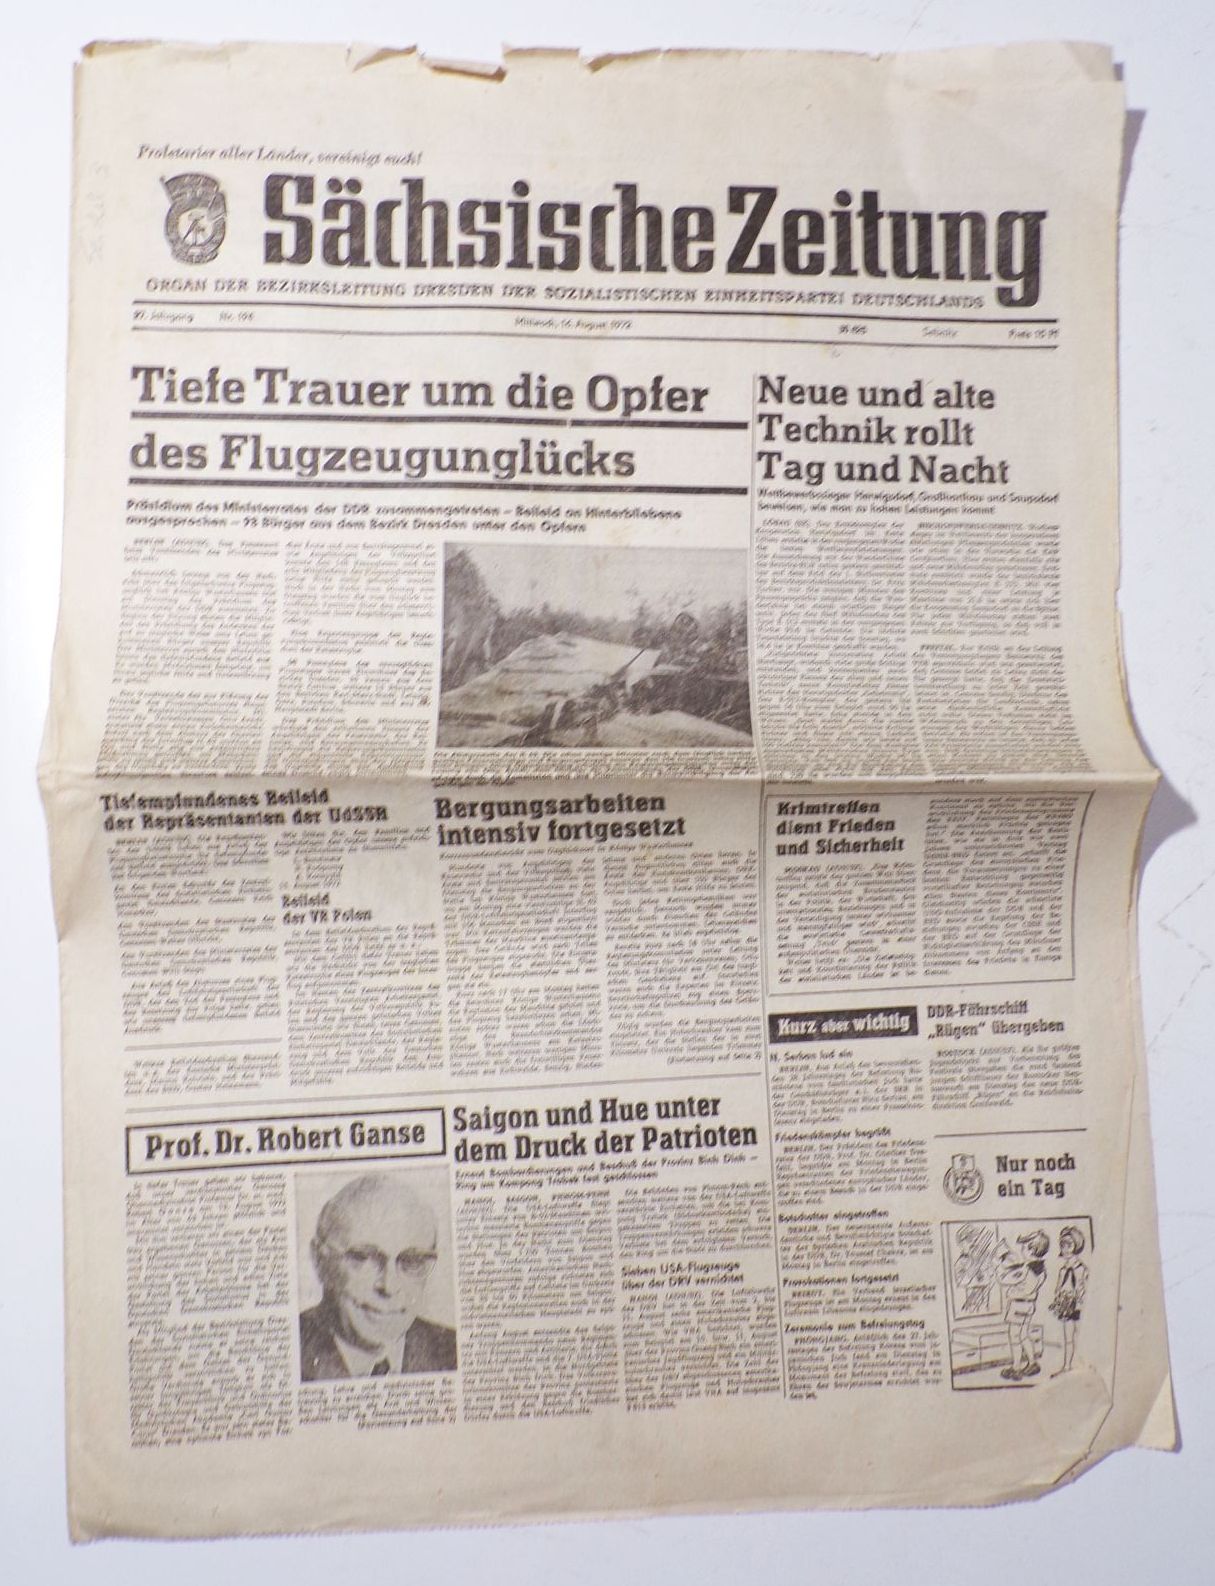 Sächsische Zeitung Trauer um Opfer Flugzeugunglück Nr 194 August 1972 DDR